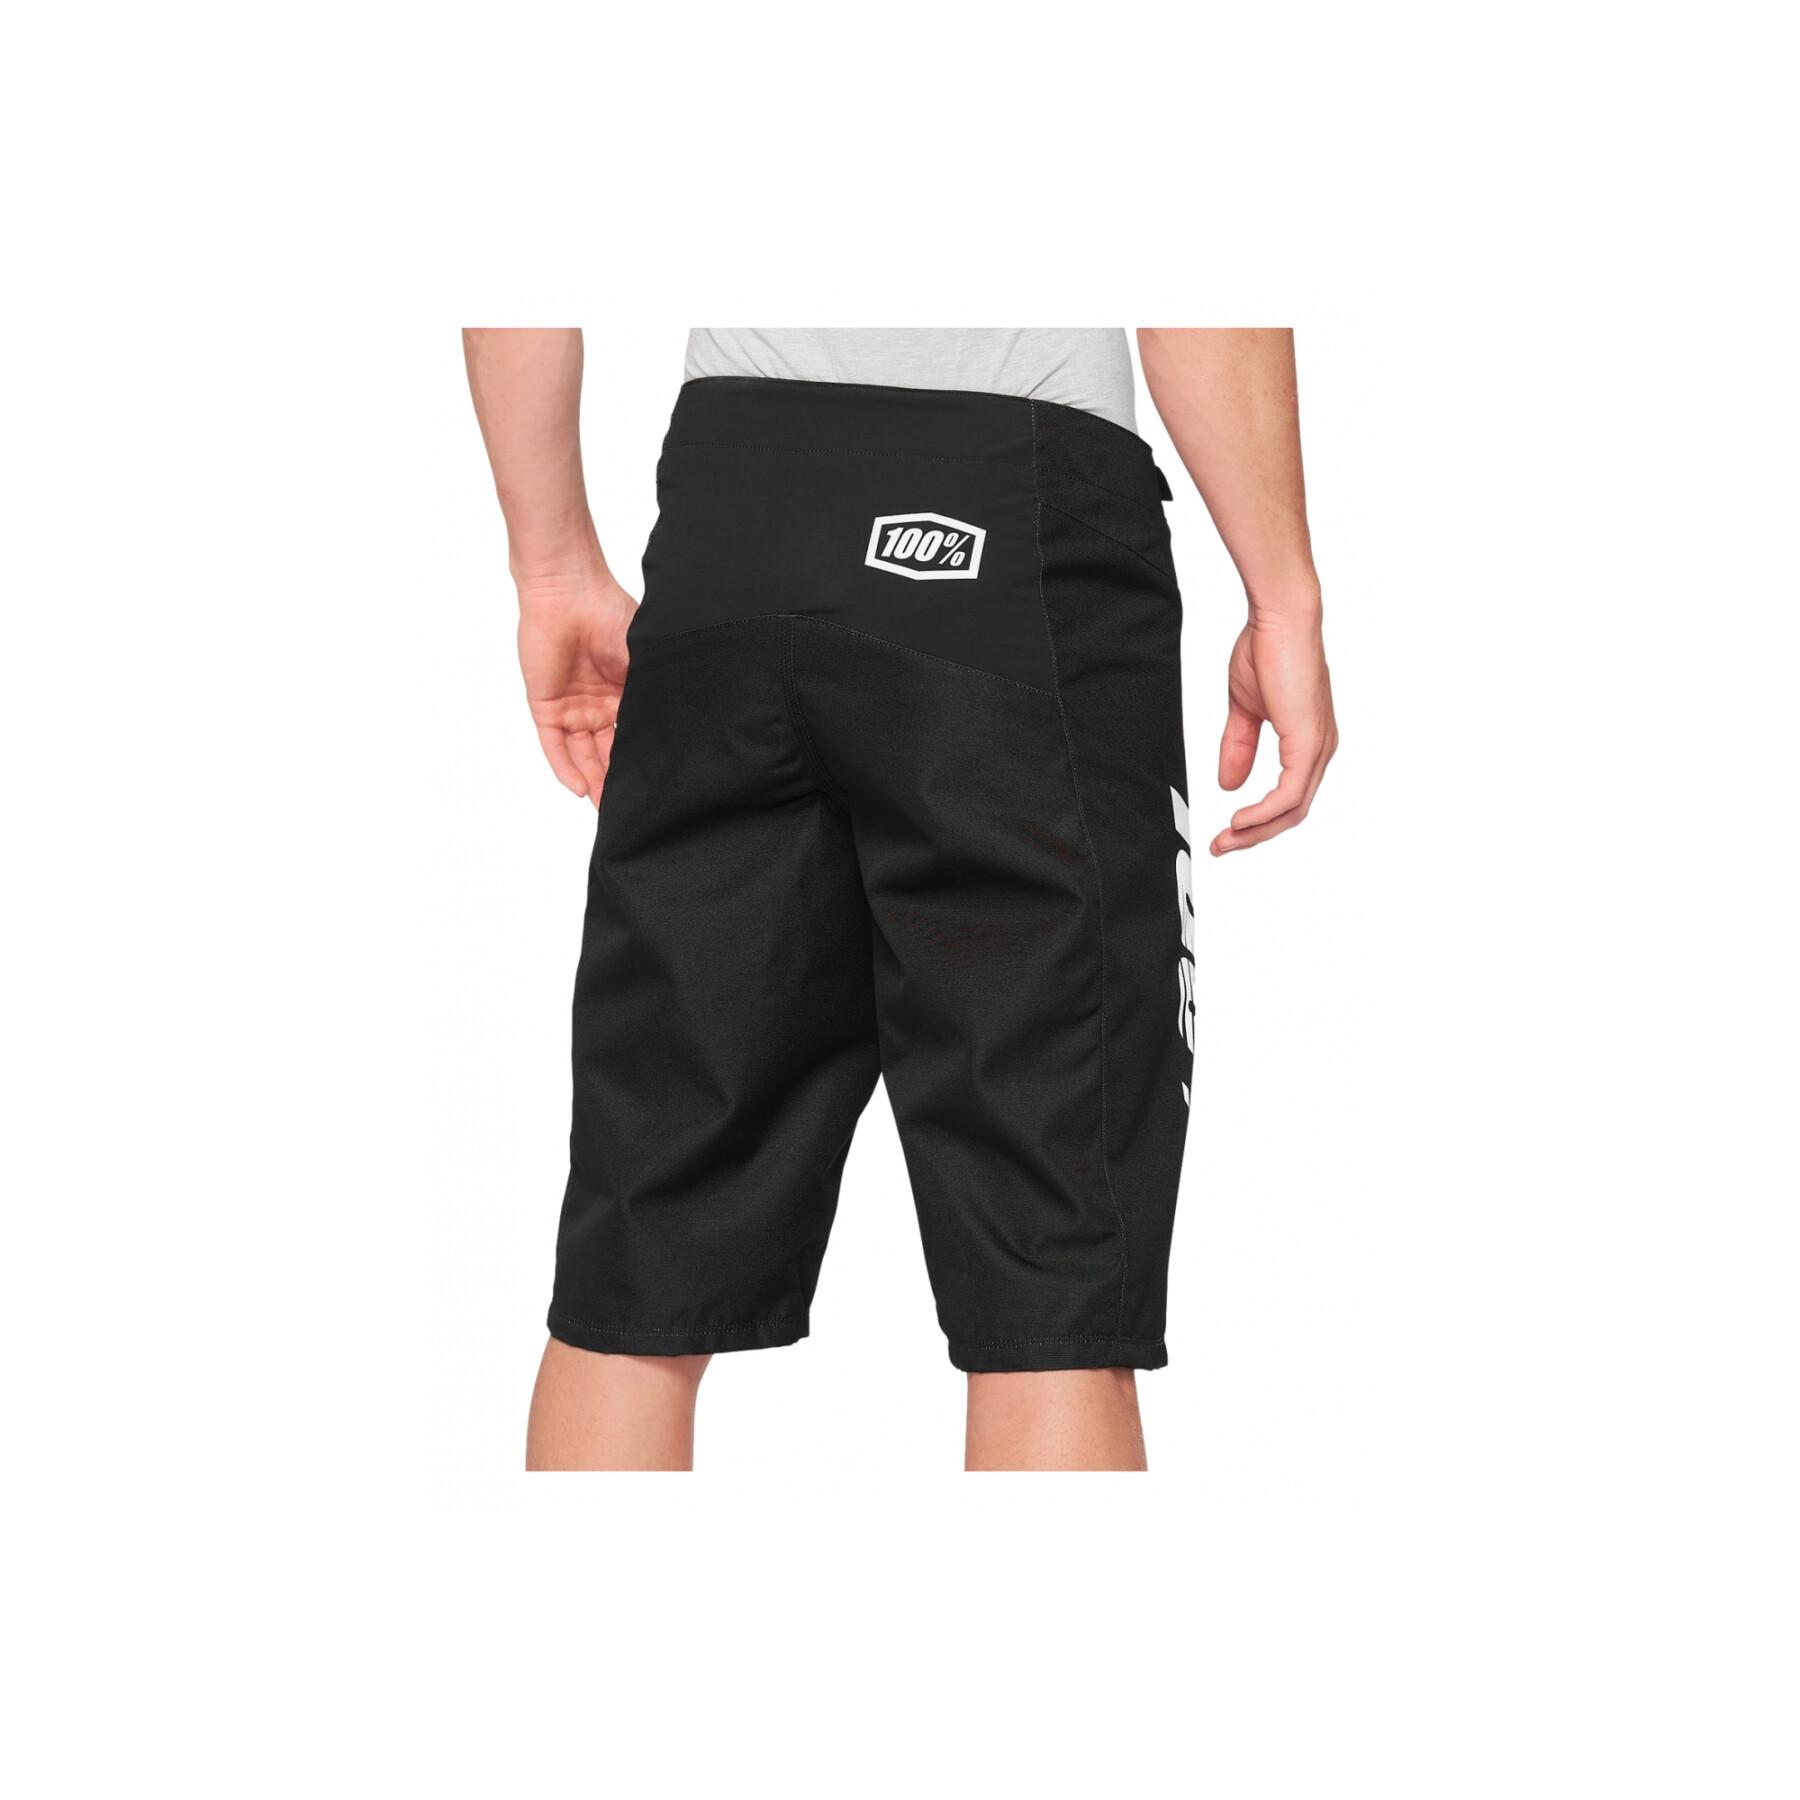 Shorts für Kinder 100% R-Core Sp21